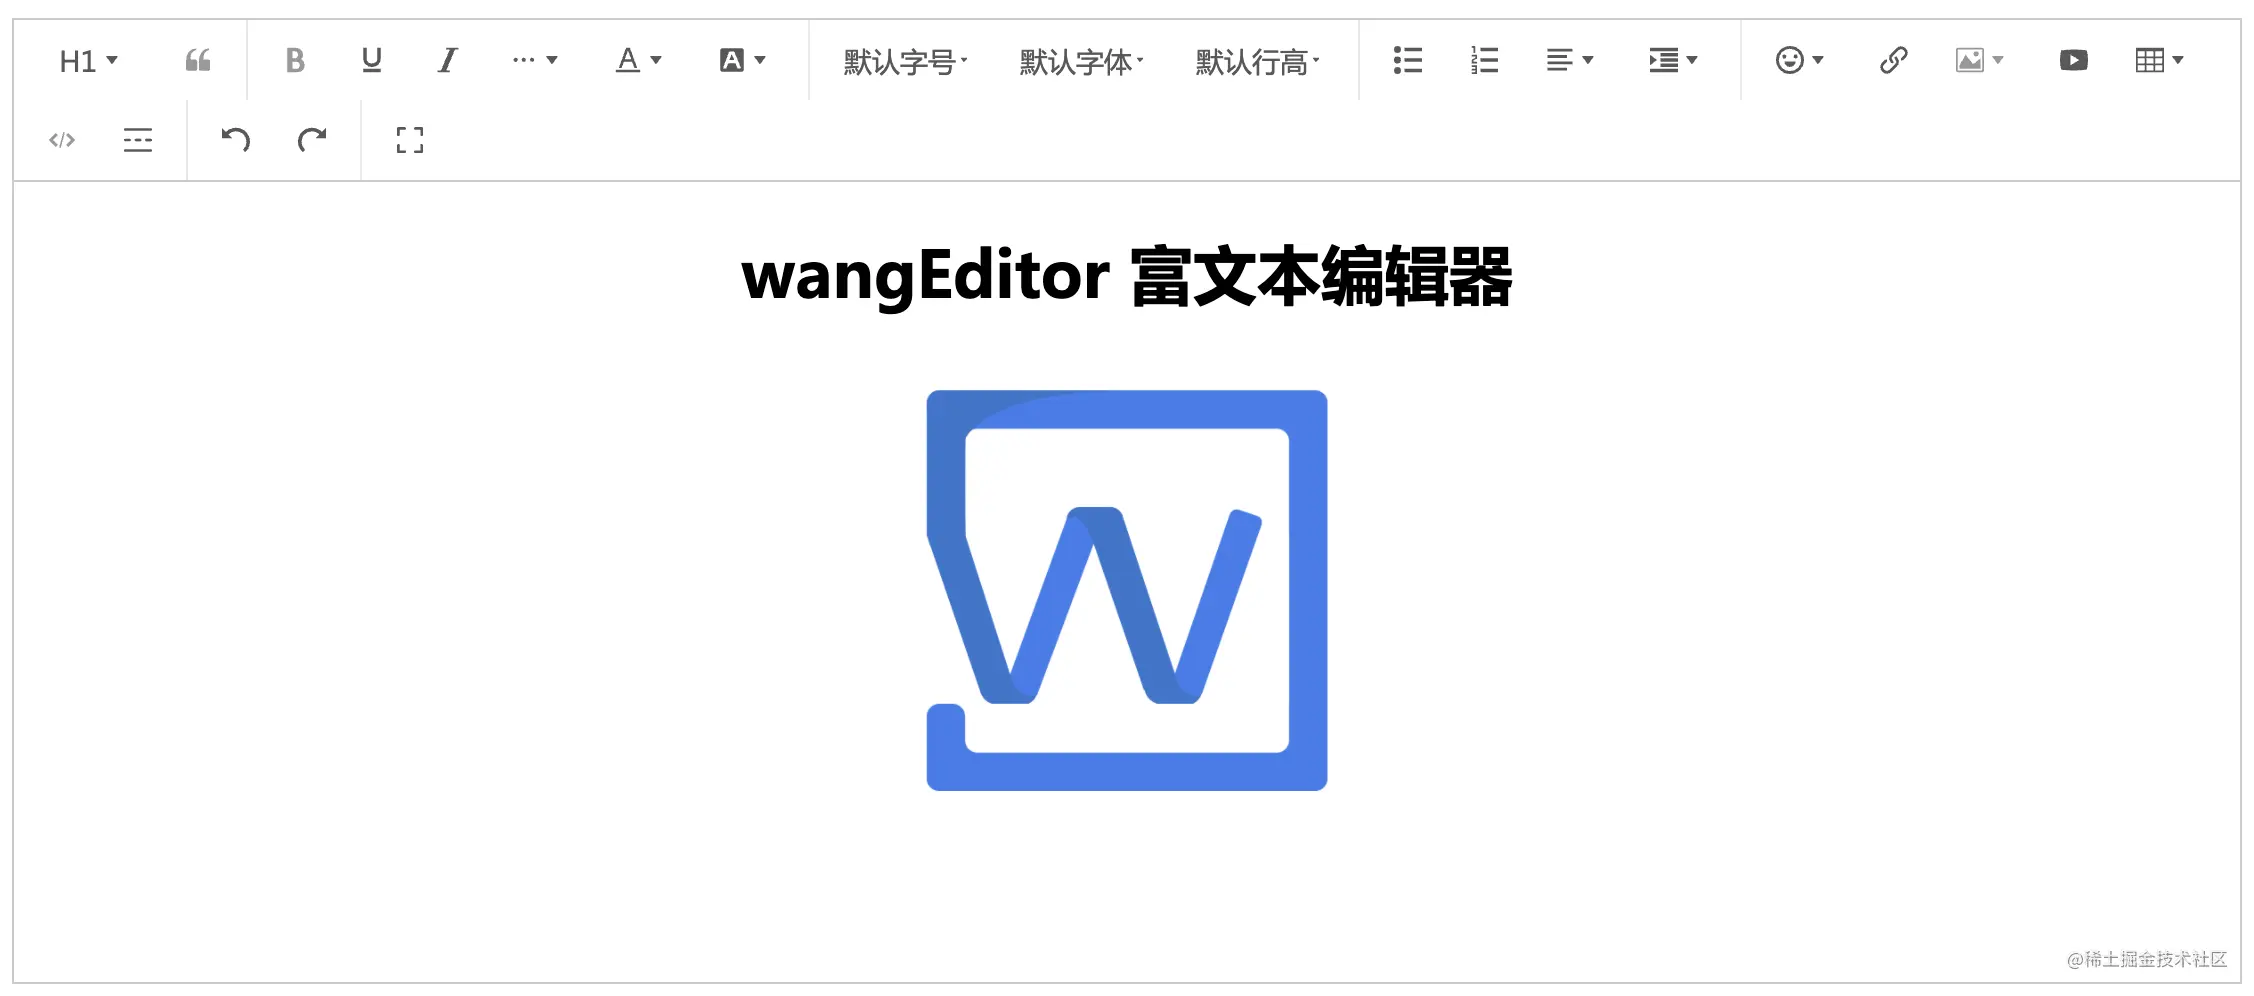 国产开源富文本编辑器 wangEditor 新版 公开测试插图